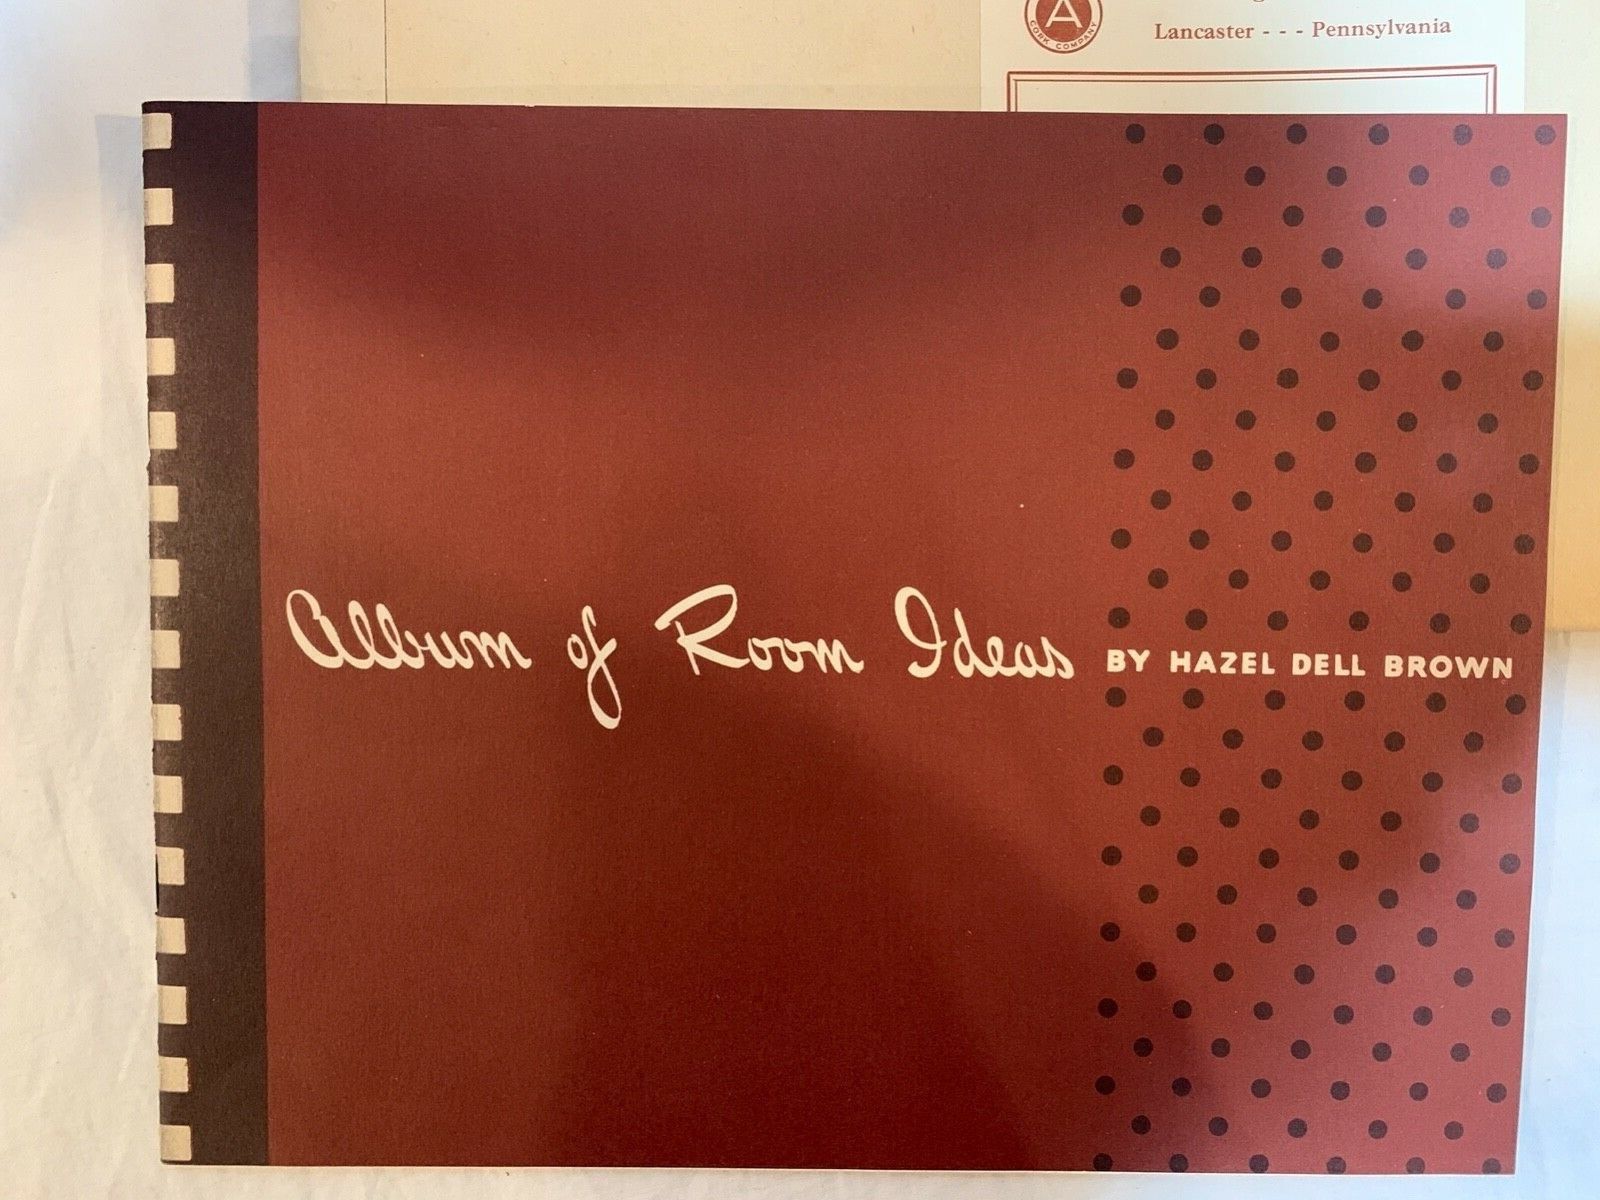 Armstrong Cork Company Album of Room Ideas Hazel Del Brown 1941 Original Envelop